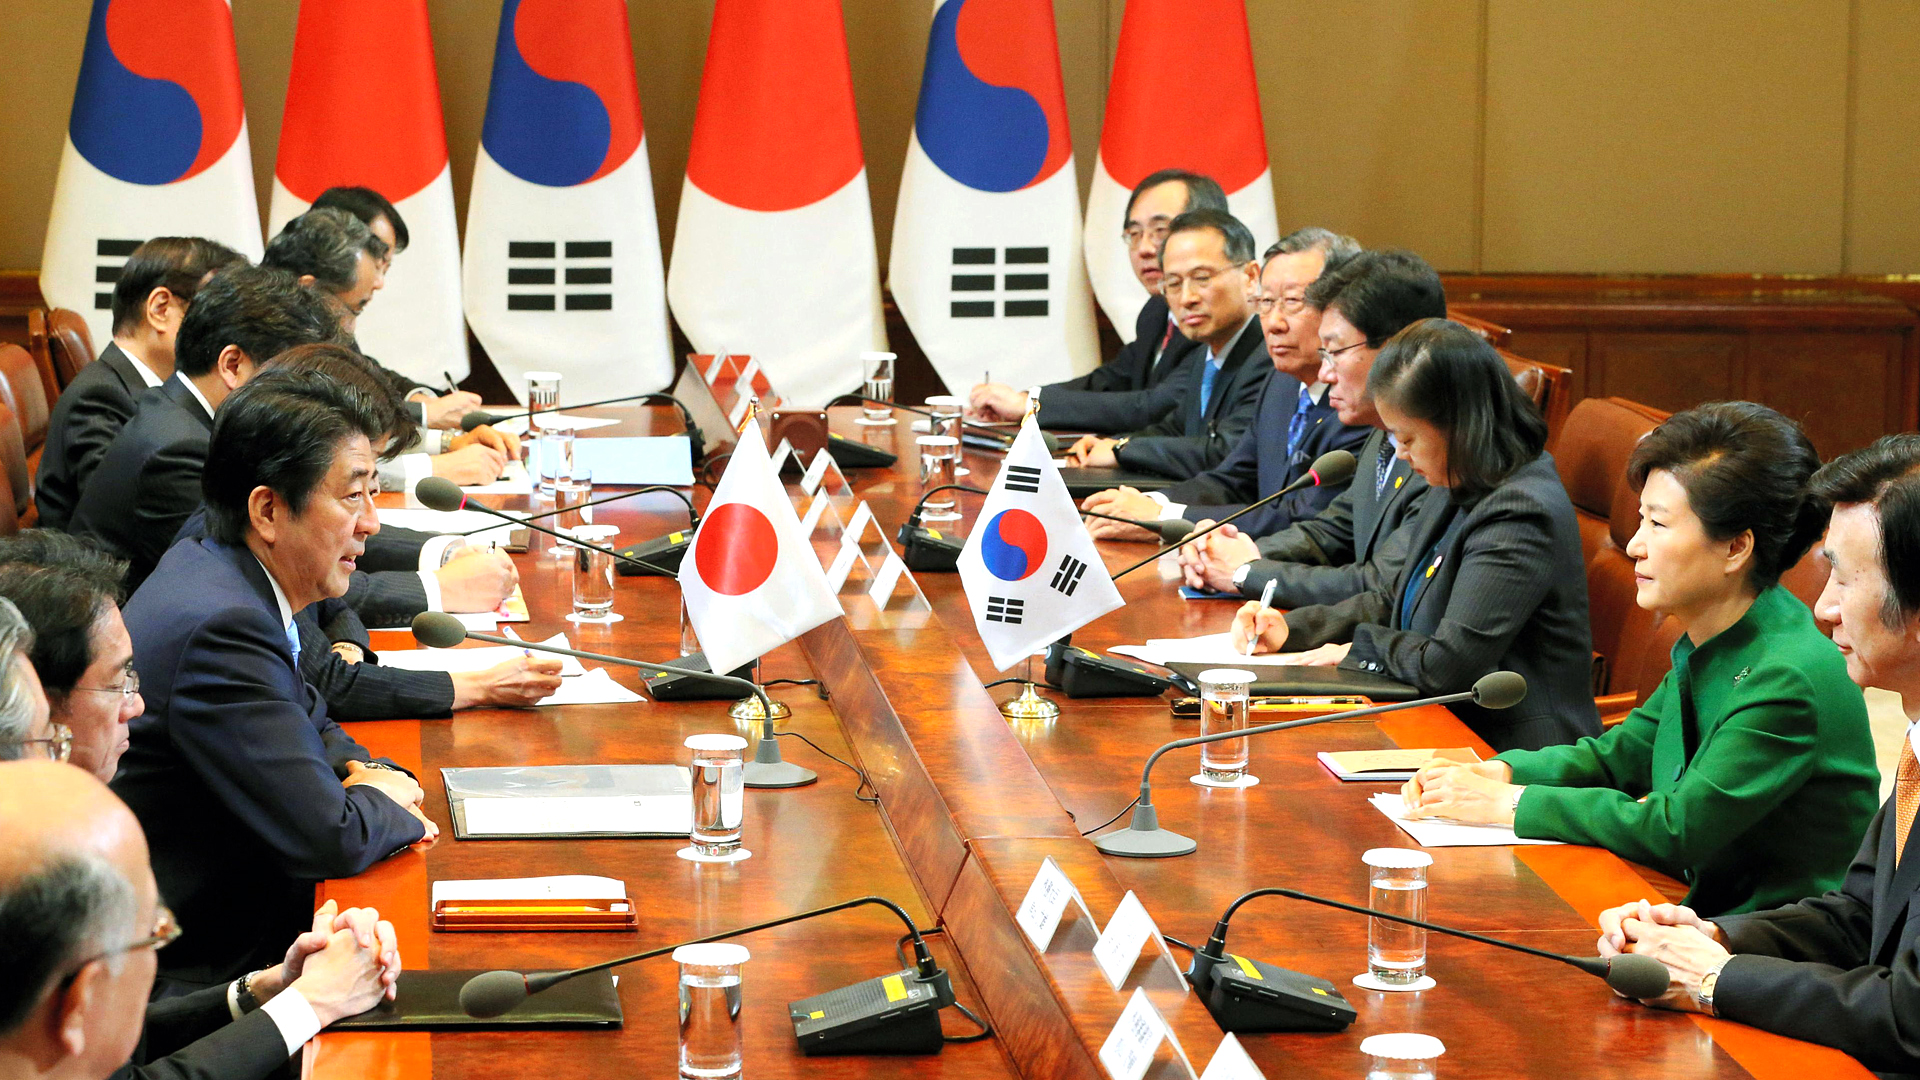 اليابان وكوريا الجنوبية تتوصلان لاتفاق ثنائي بخصوص قضية نساء الراحة بشكل نهائي وبلا رجعة في عام 2015 | عبر المصور تشيونج وا داي